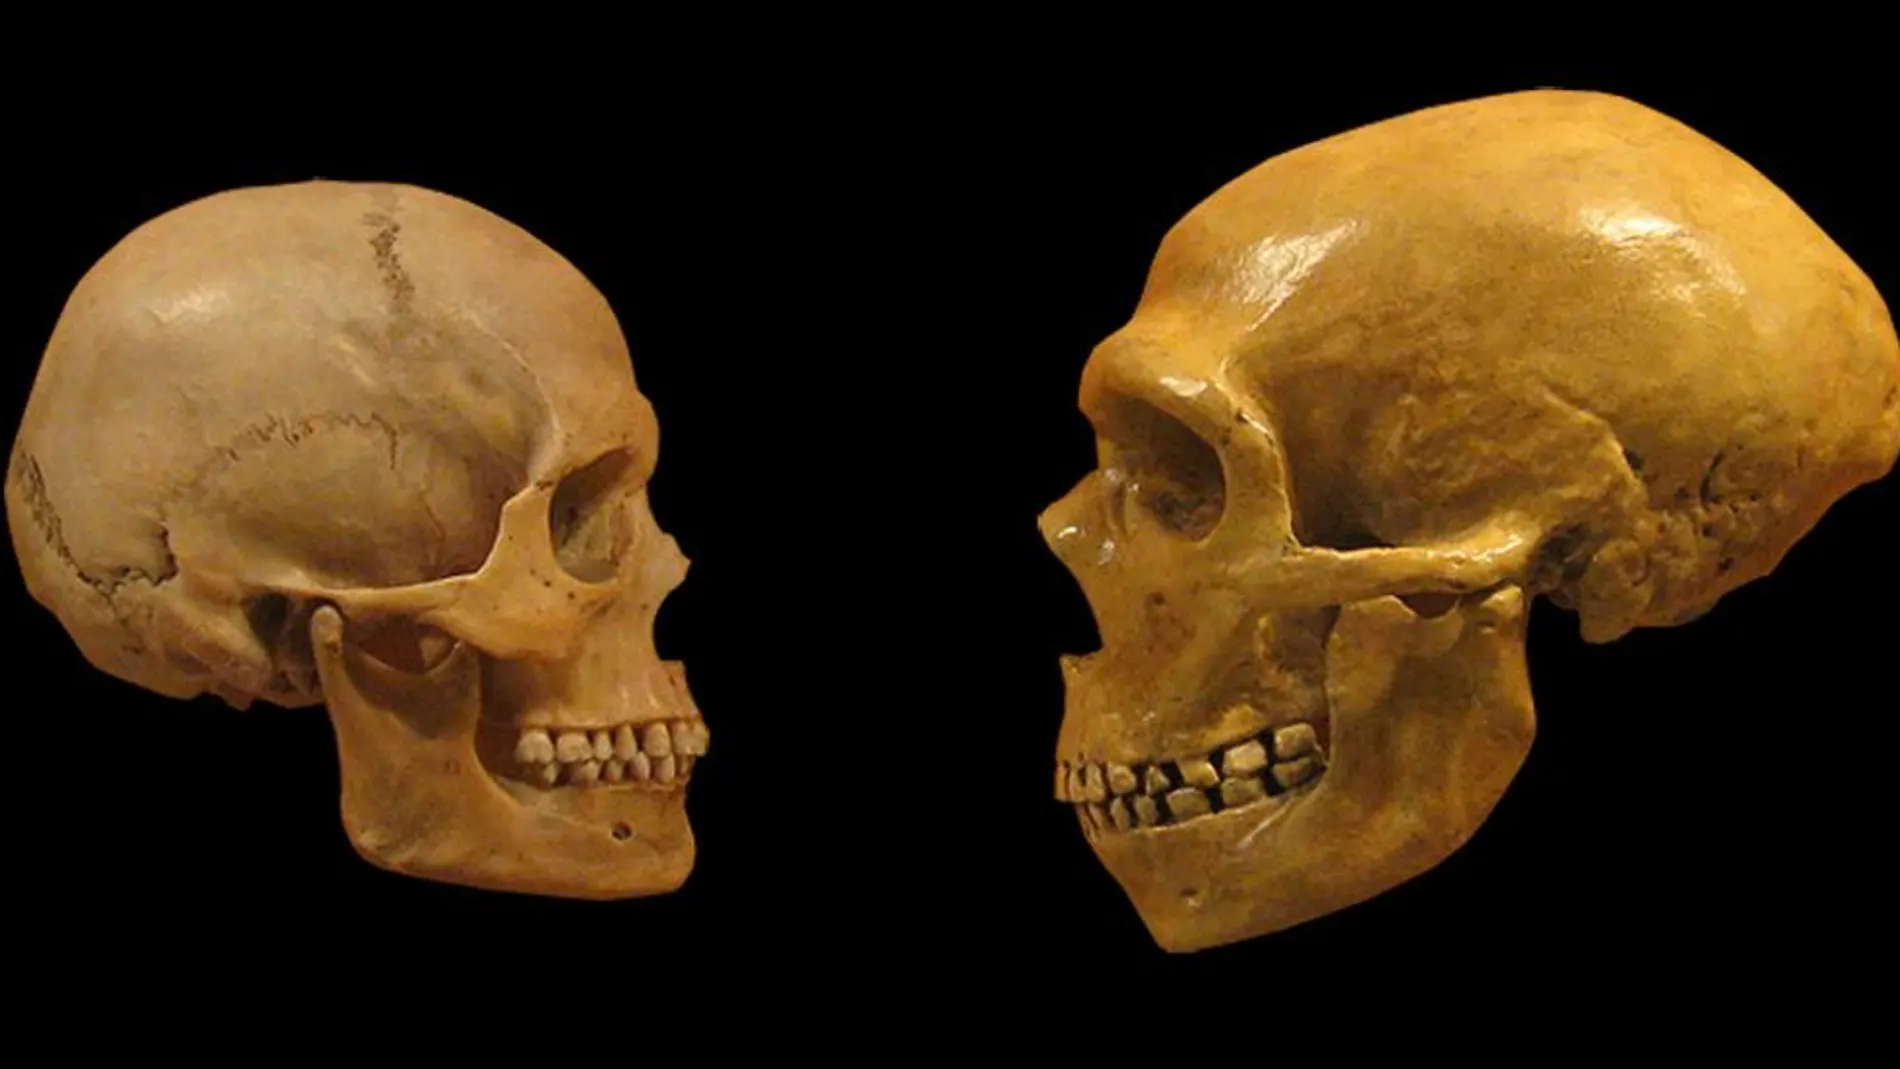 Mirada amorosa entre sapiens y neandertal.